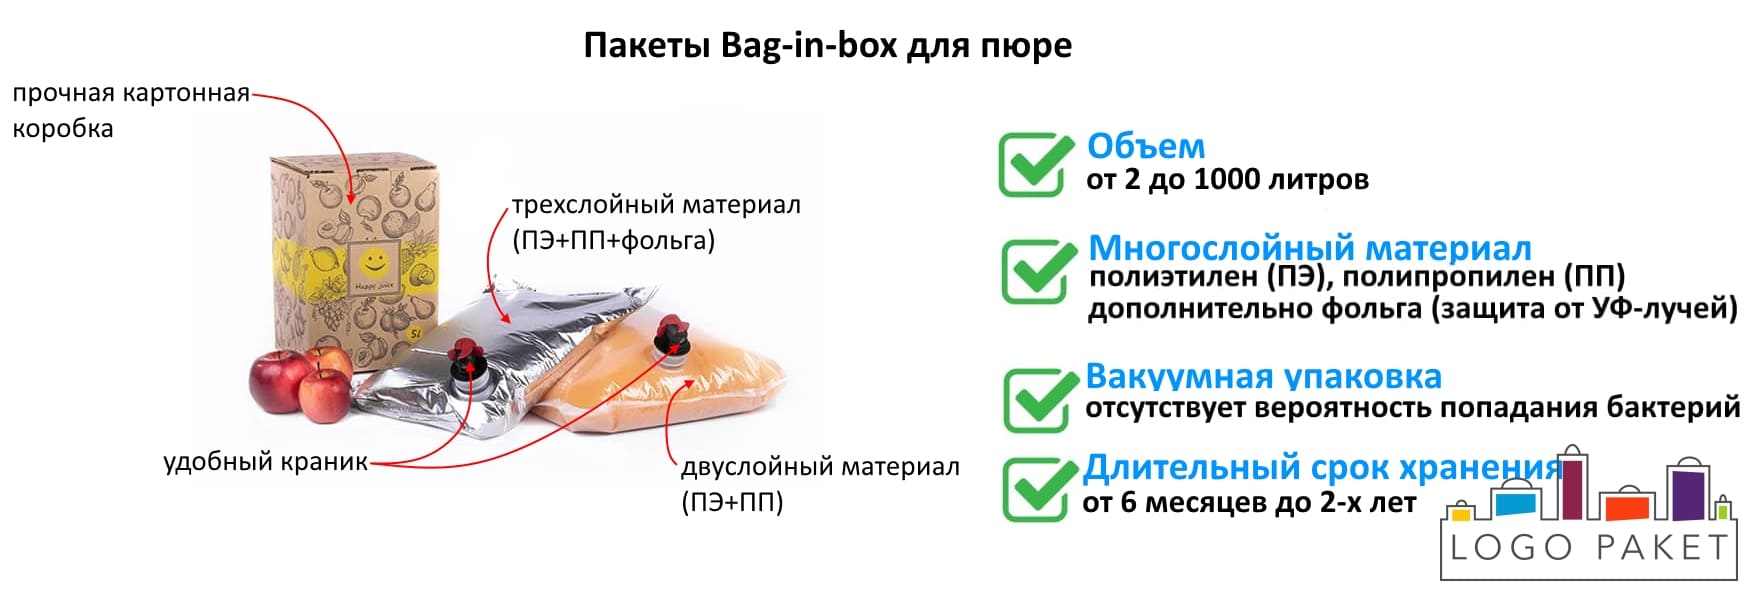 Пакеты Bag-in-box для пюре инфографика